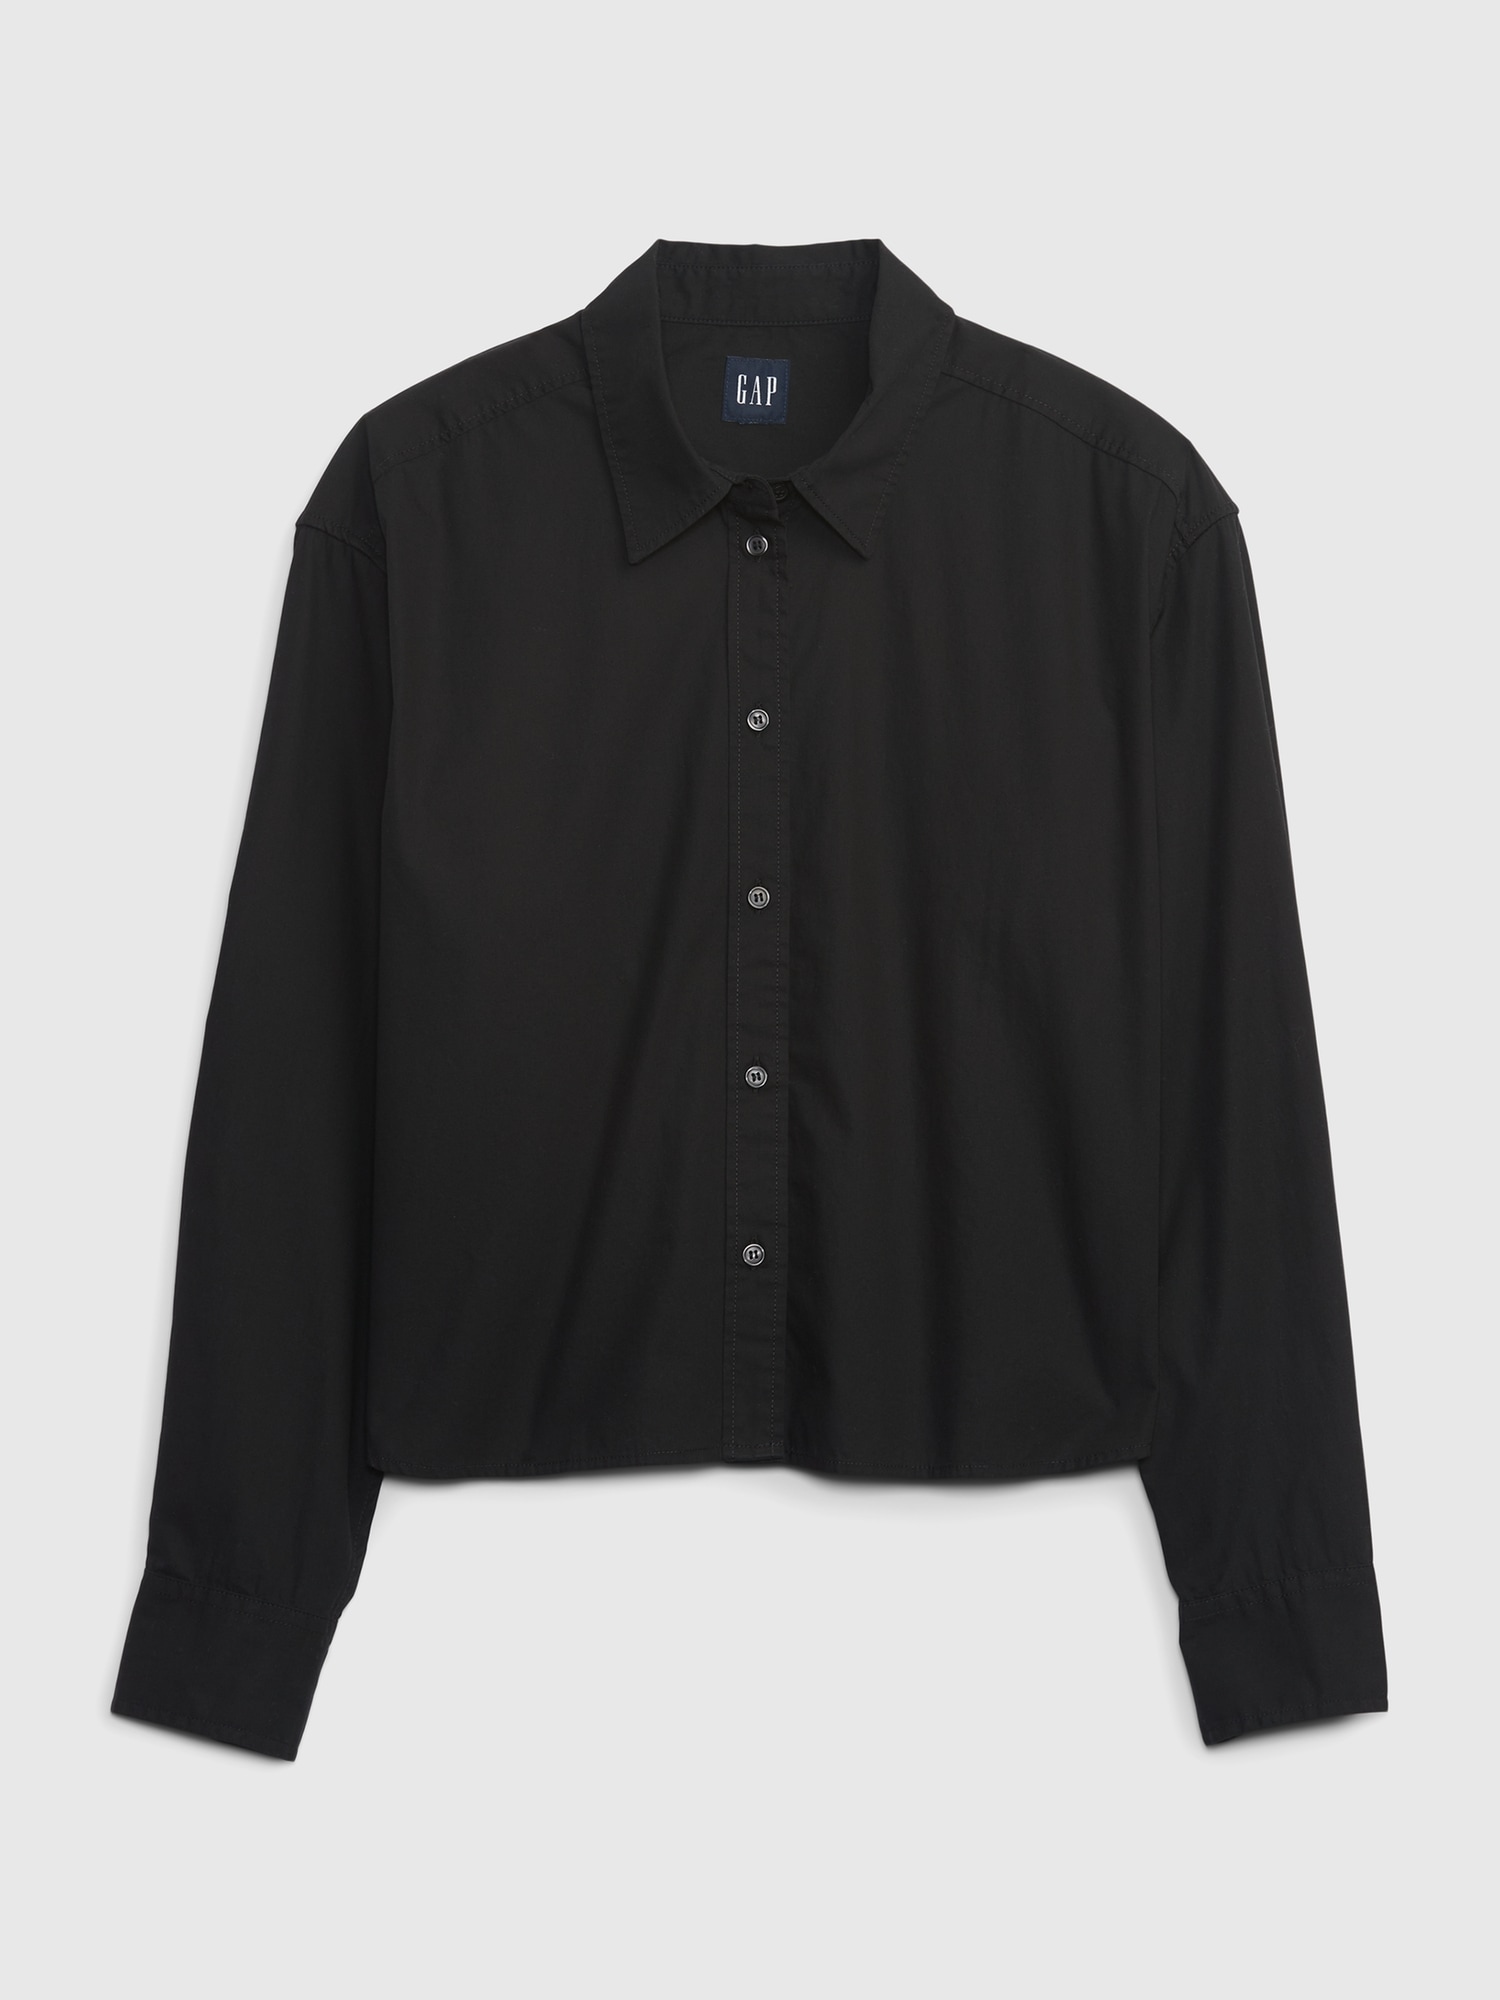 Gap Organic Cotton Cropped Shirt In Black